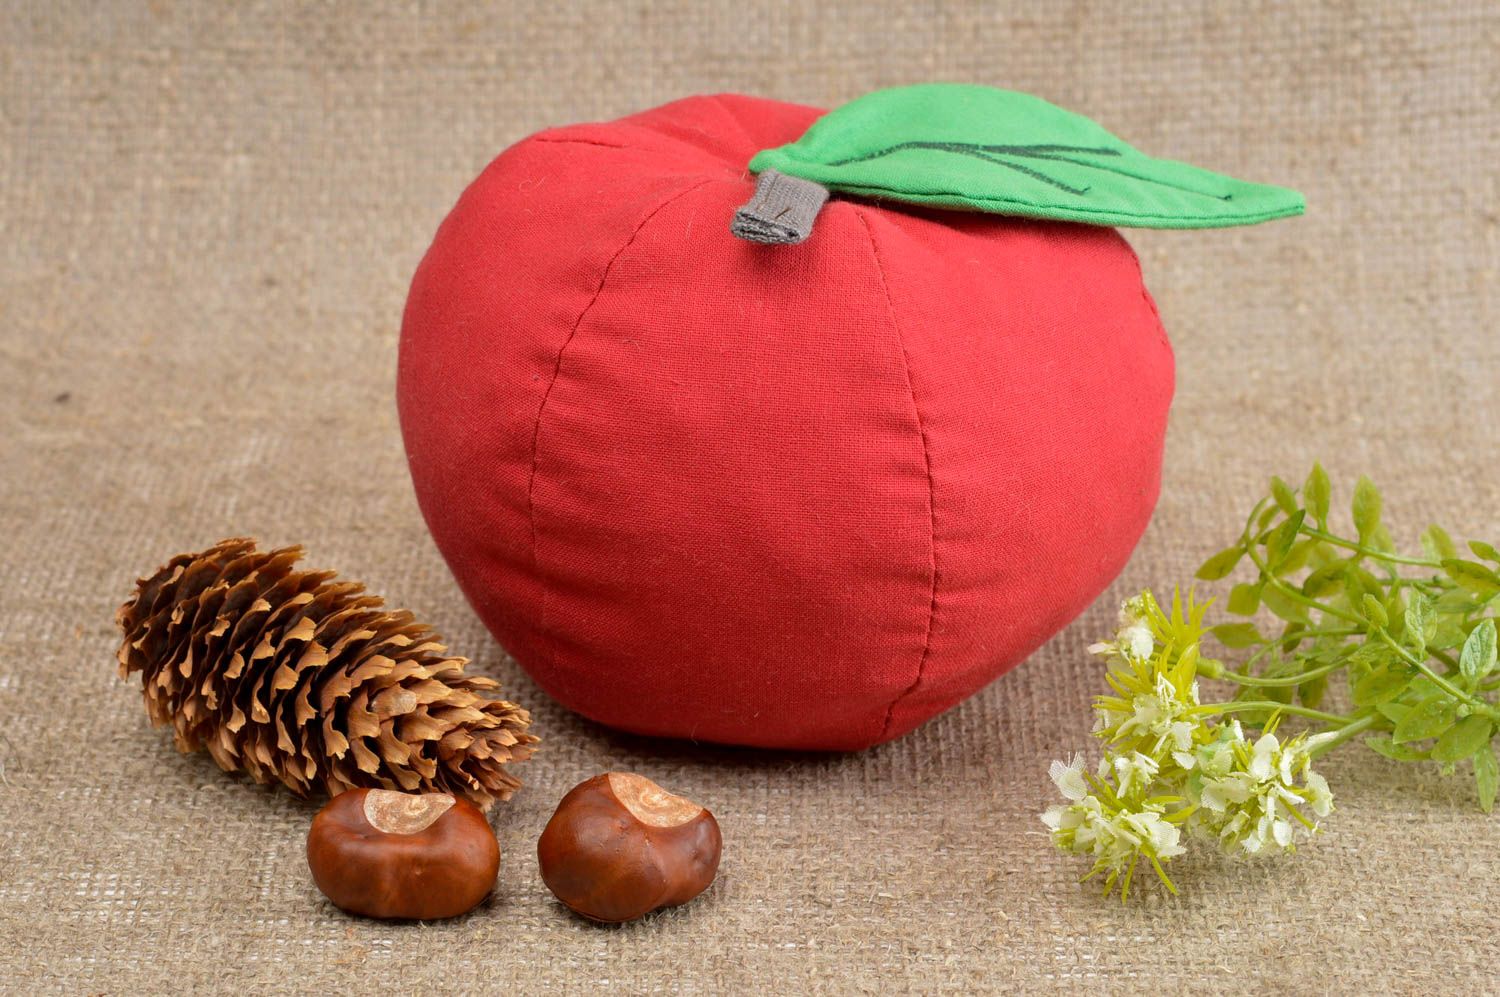 Spielzeug Obst Gemüse handmade Haus Deko Apfel schönes Deko Spielzeug in Rot foto 1